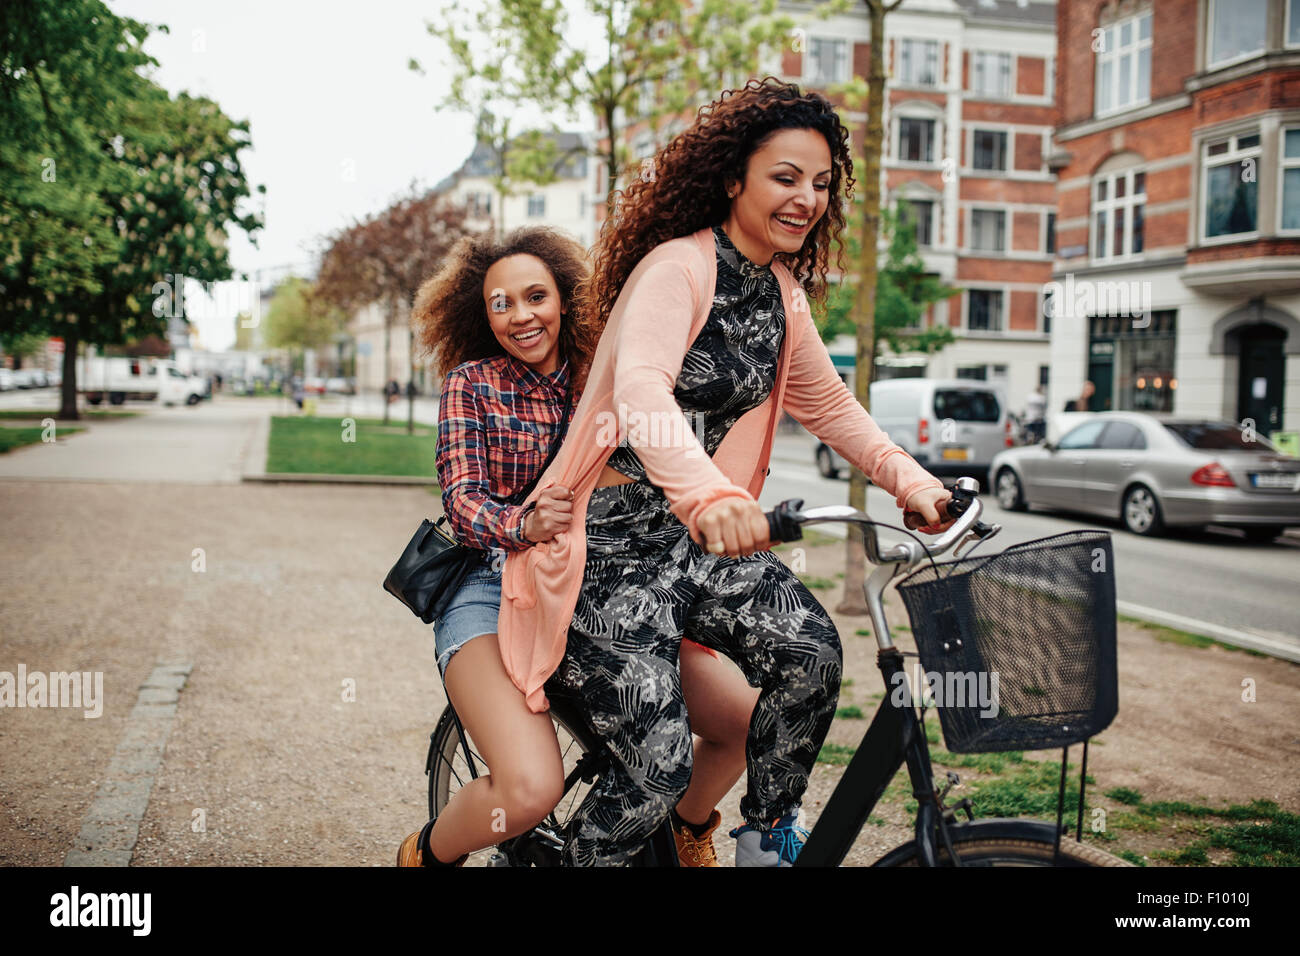 Fröhliche junge Frauen genießen Fahrrad fahren auf Stadtstraße. Zwei junge Mädchen zusammen reiten auf einem Fahrrad. Stockfoto